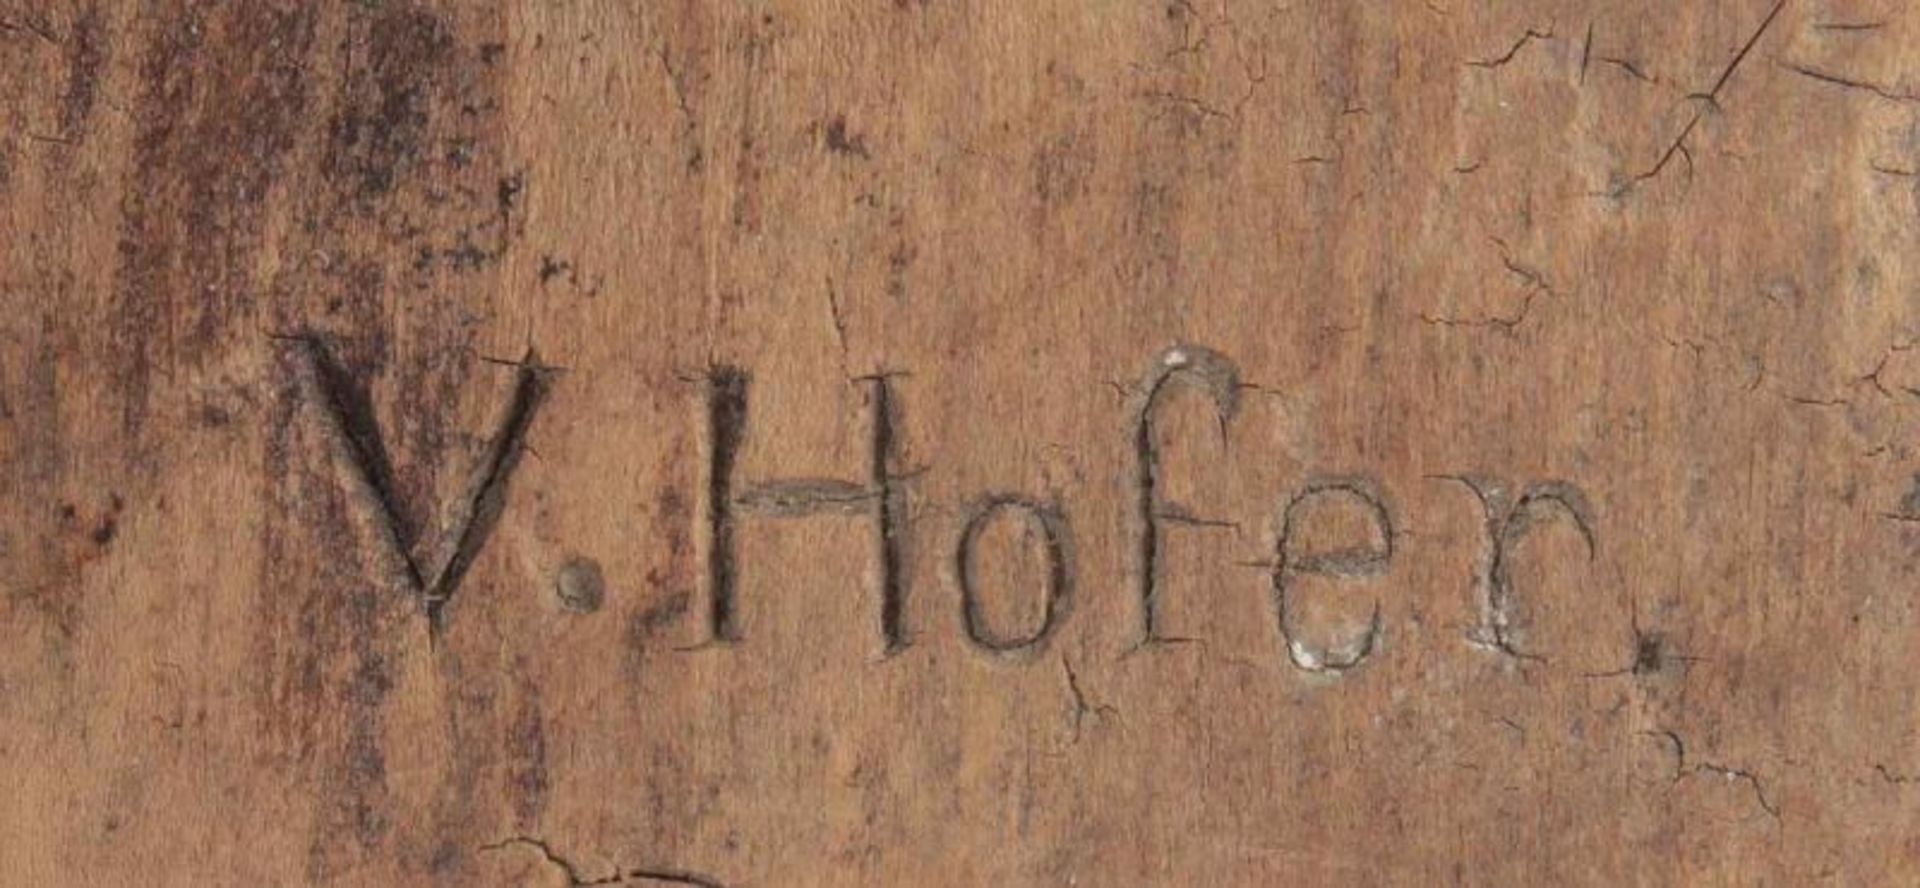 MARIA BESUCHT ELISABETH, Holzrelief, geschnitzt, 31 x 24, besch., signiert "V.HOFER", DEUTSCH, um - Bild 2 aus 2